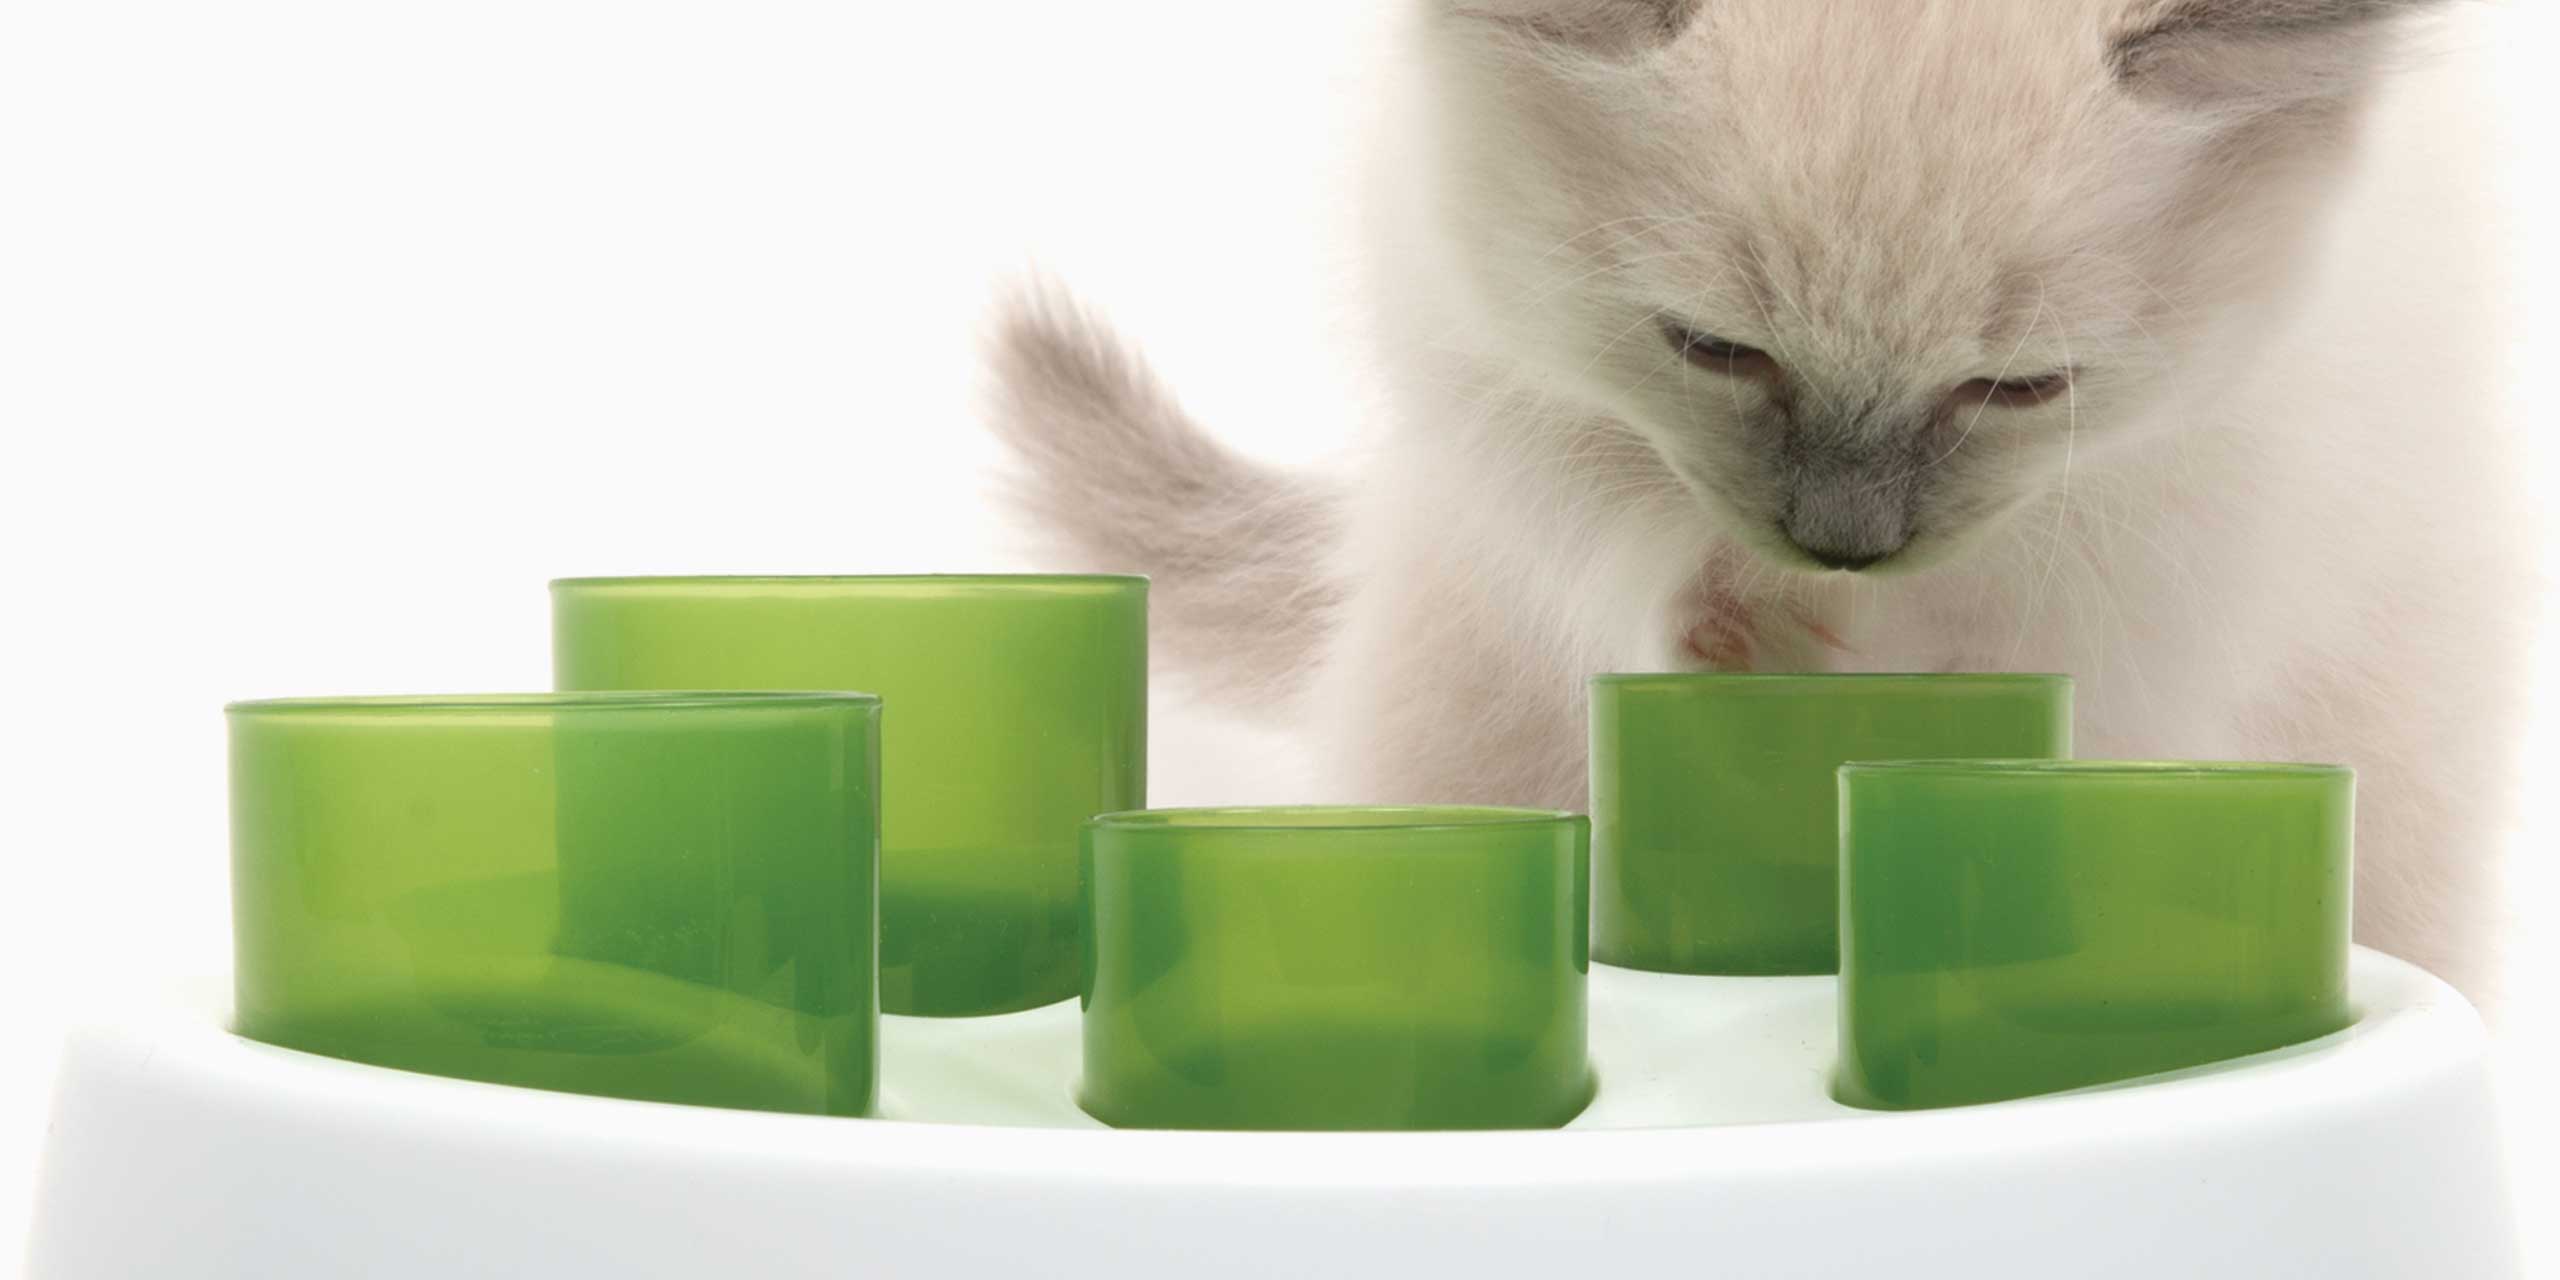 Eine Katze sucht in den Gefäßen nach Futter oder Leckerlis